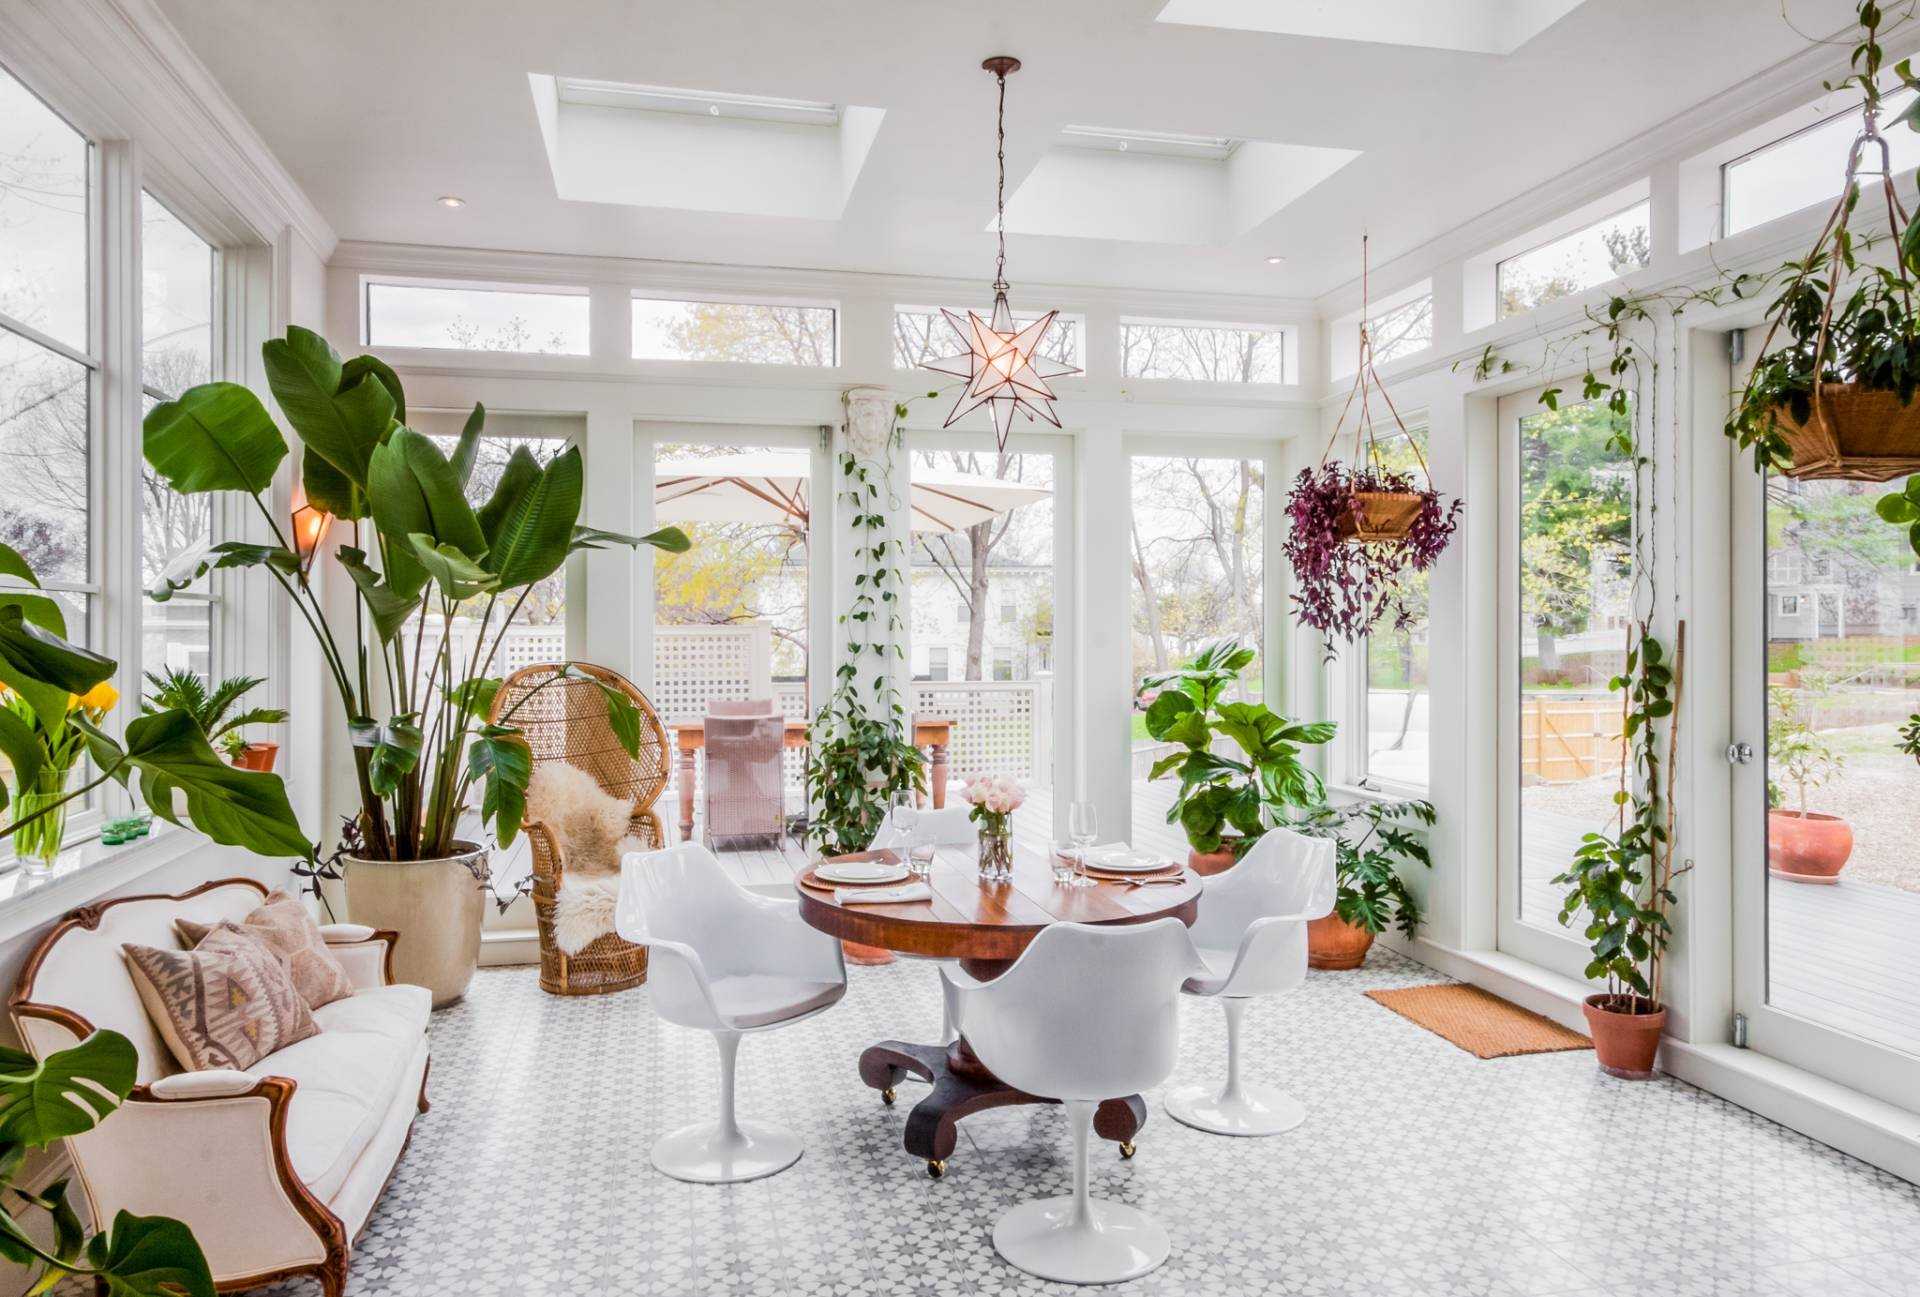 Лучшие комнатные растения очищающие воздух:топ15, для квартиры и дома